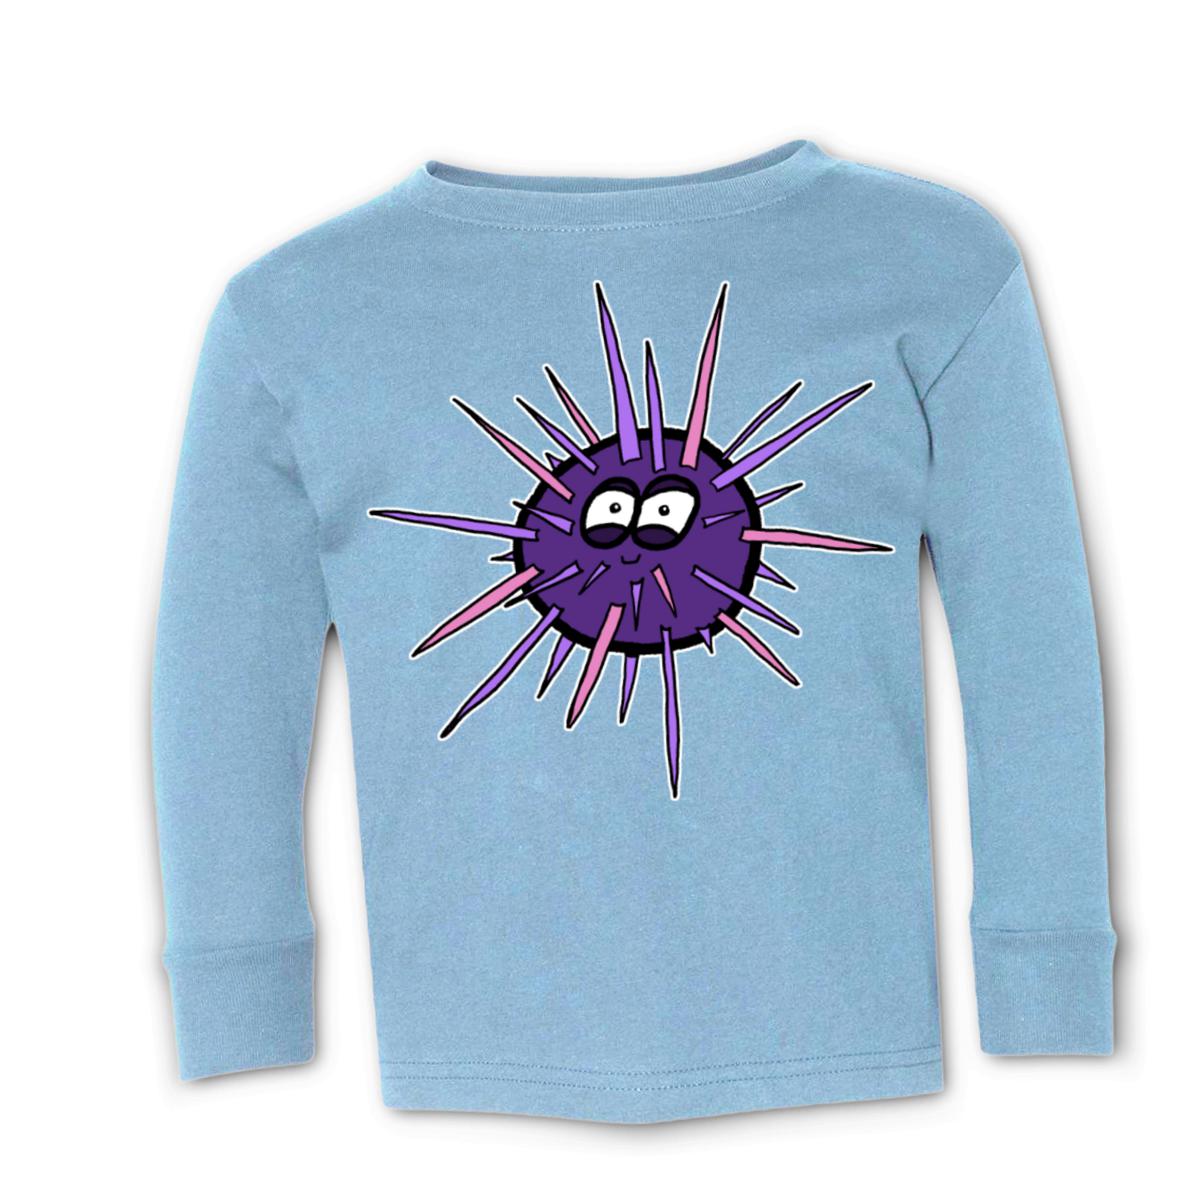 Sea Urchin Toddler Long Sleeve Tee 2T light-blue